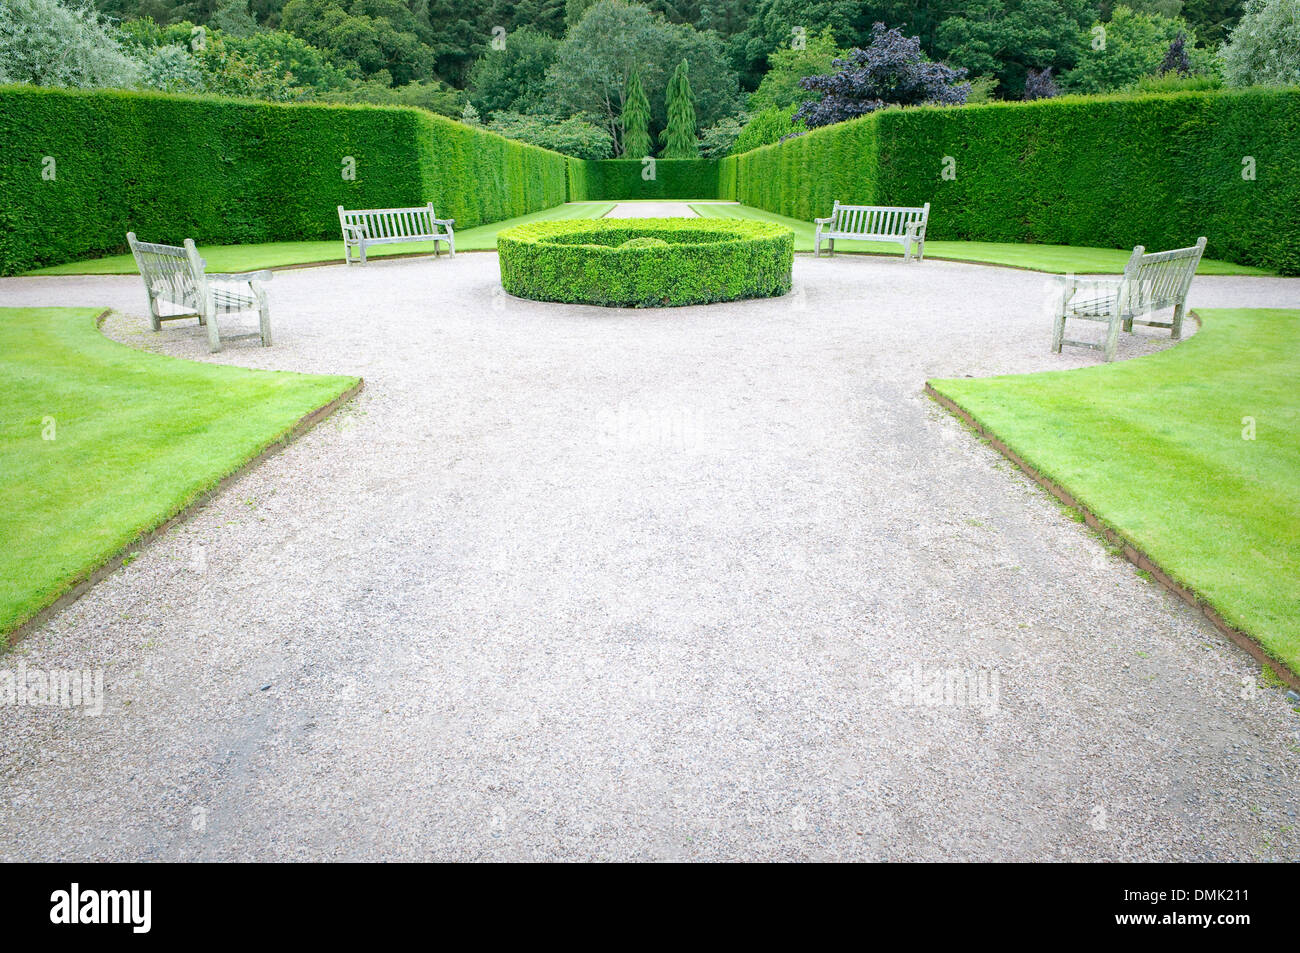 Garden seats at Rosemoor Gardens, Devon, UK. Stock Photo